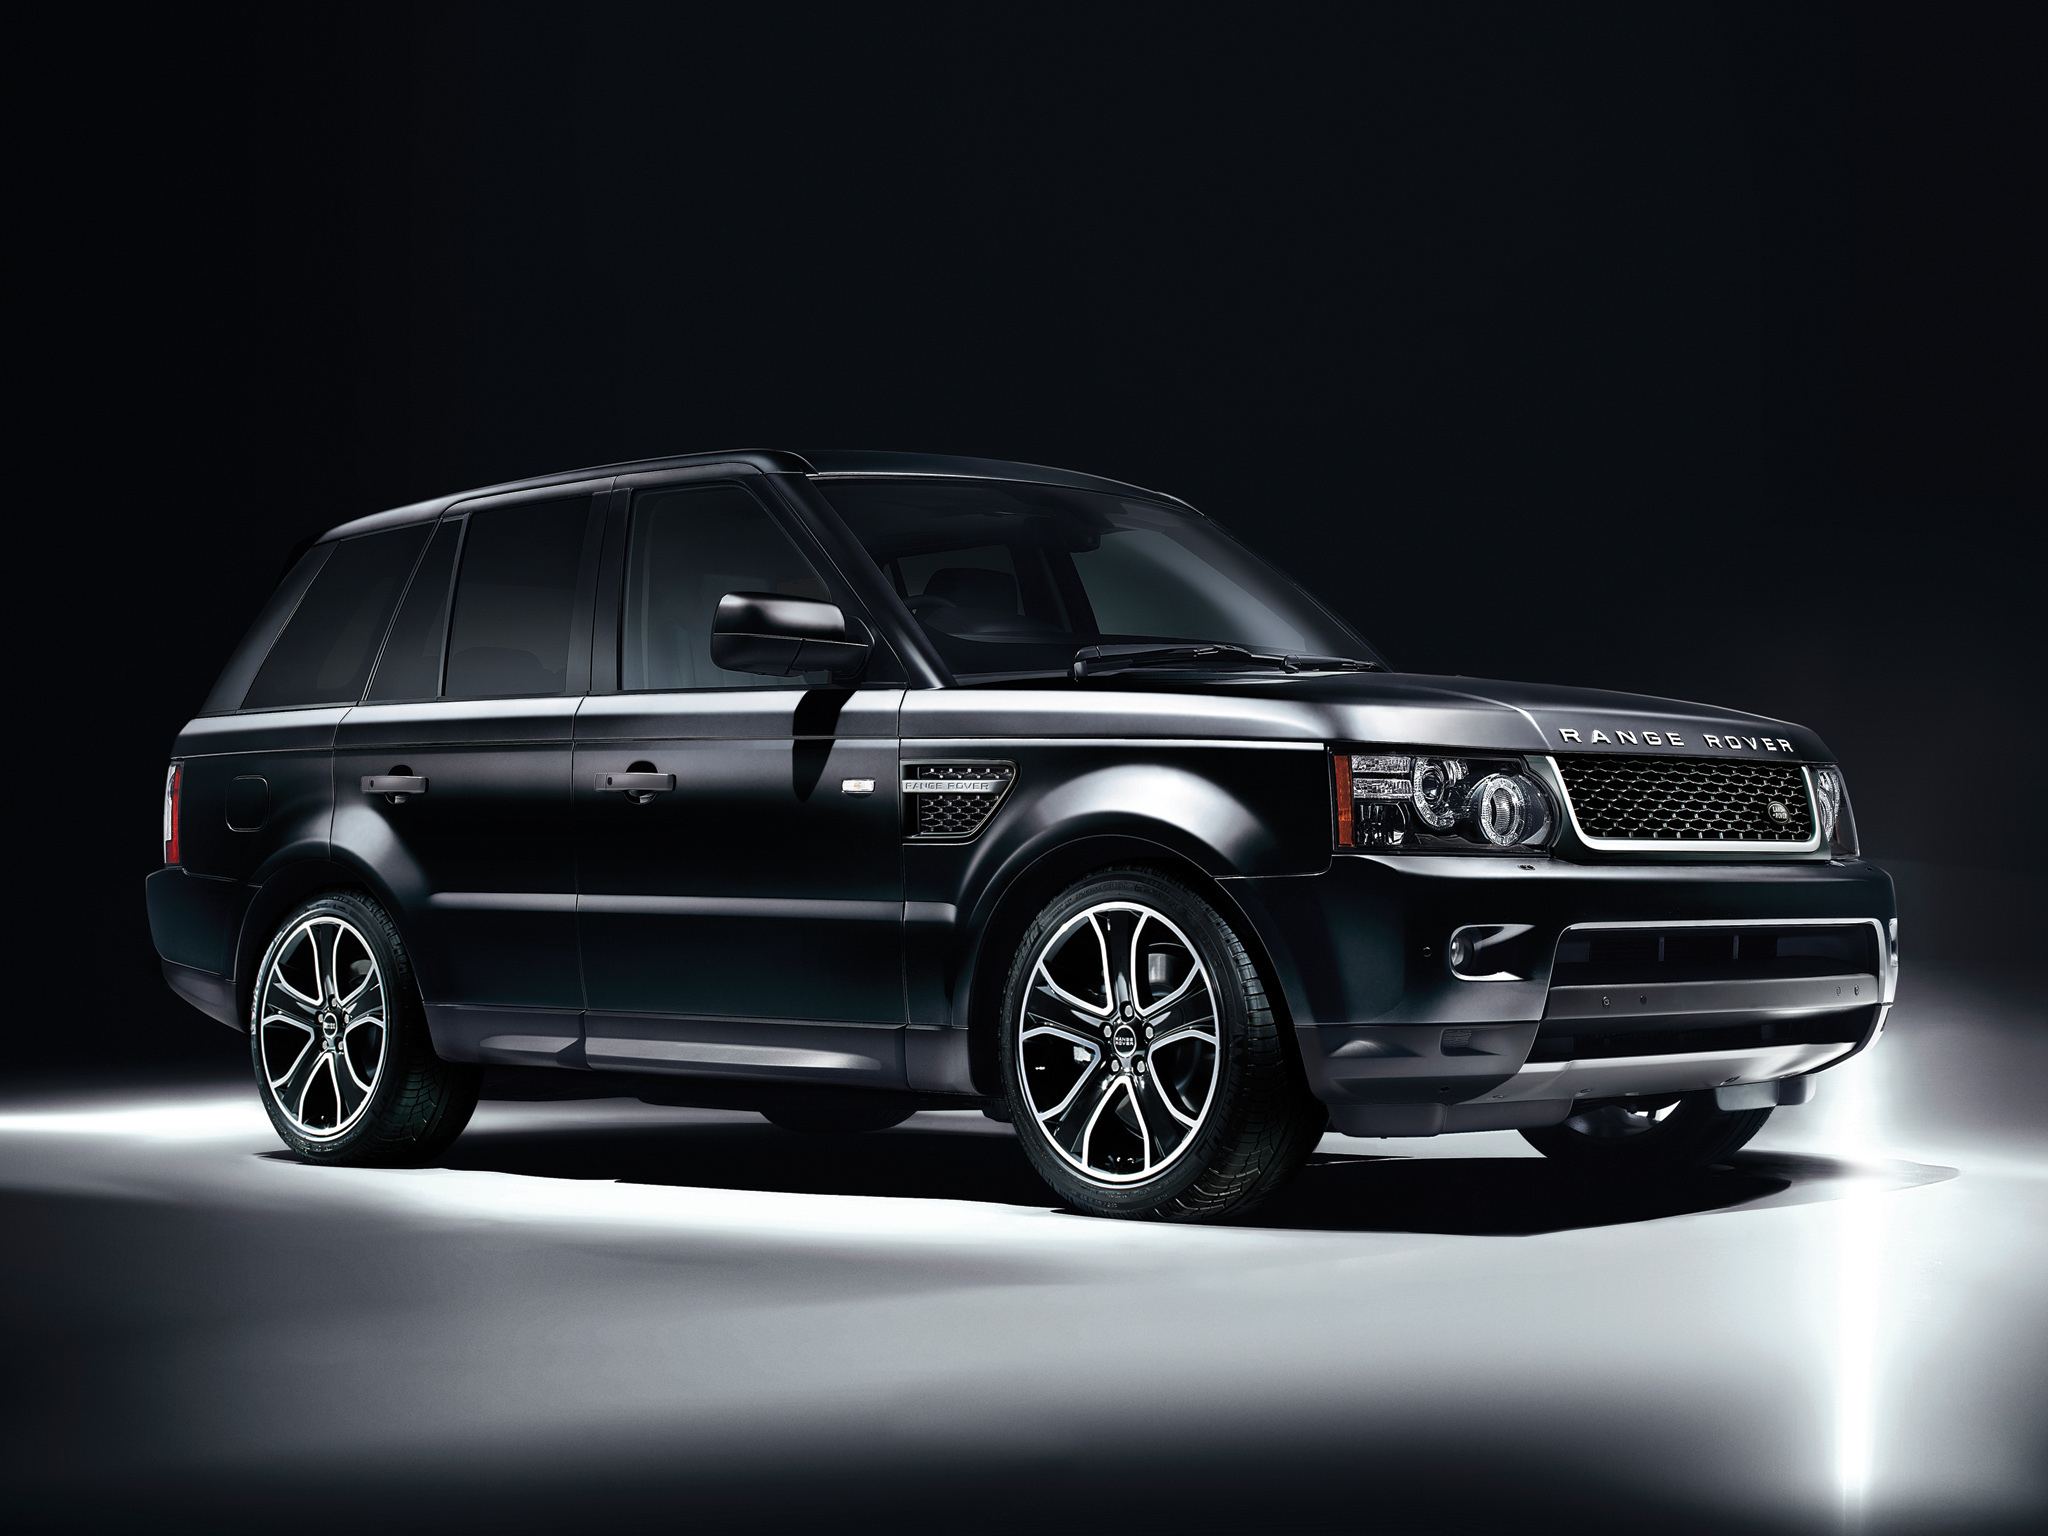 Range Rover Sport 2012 Black